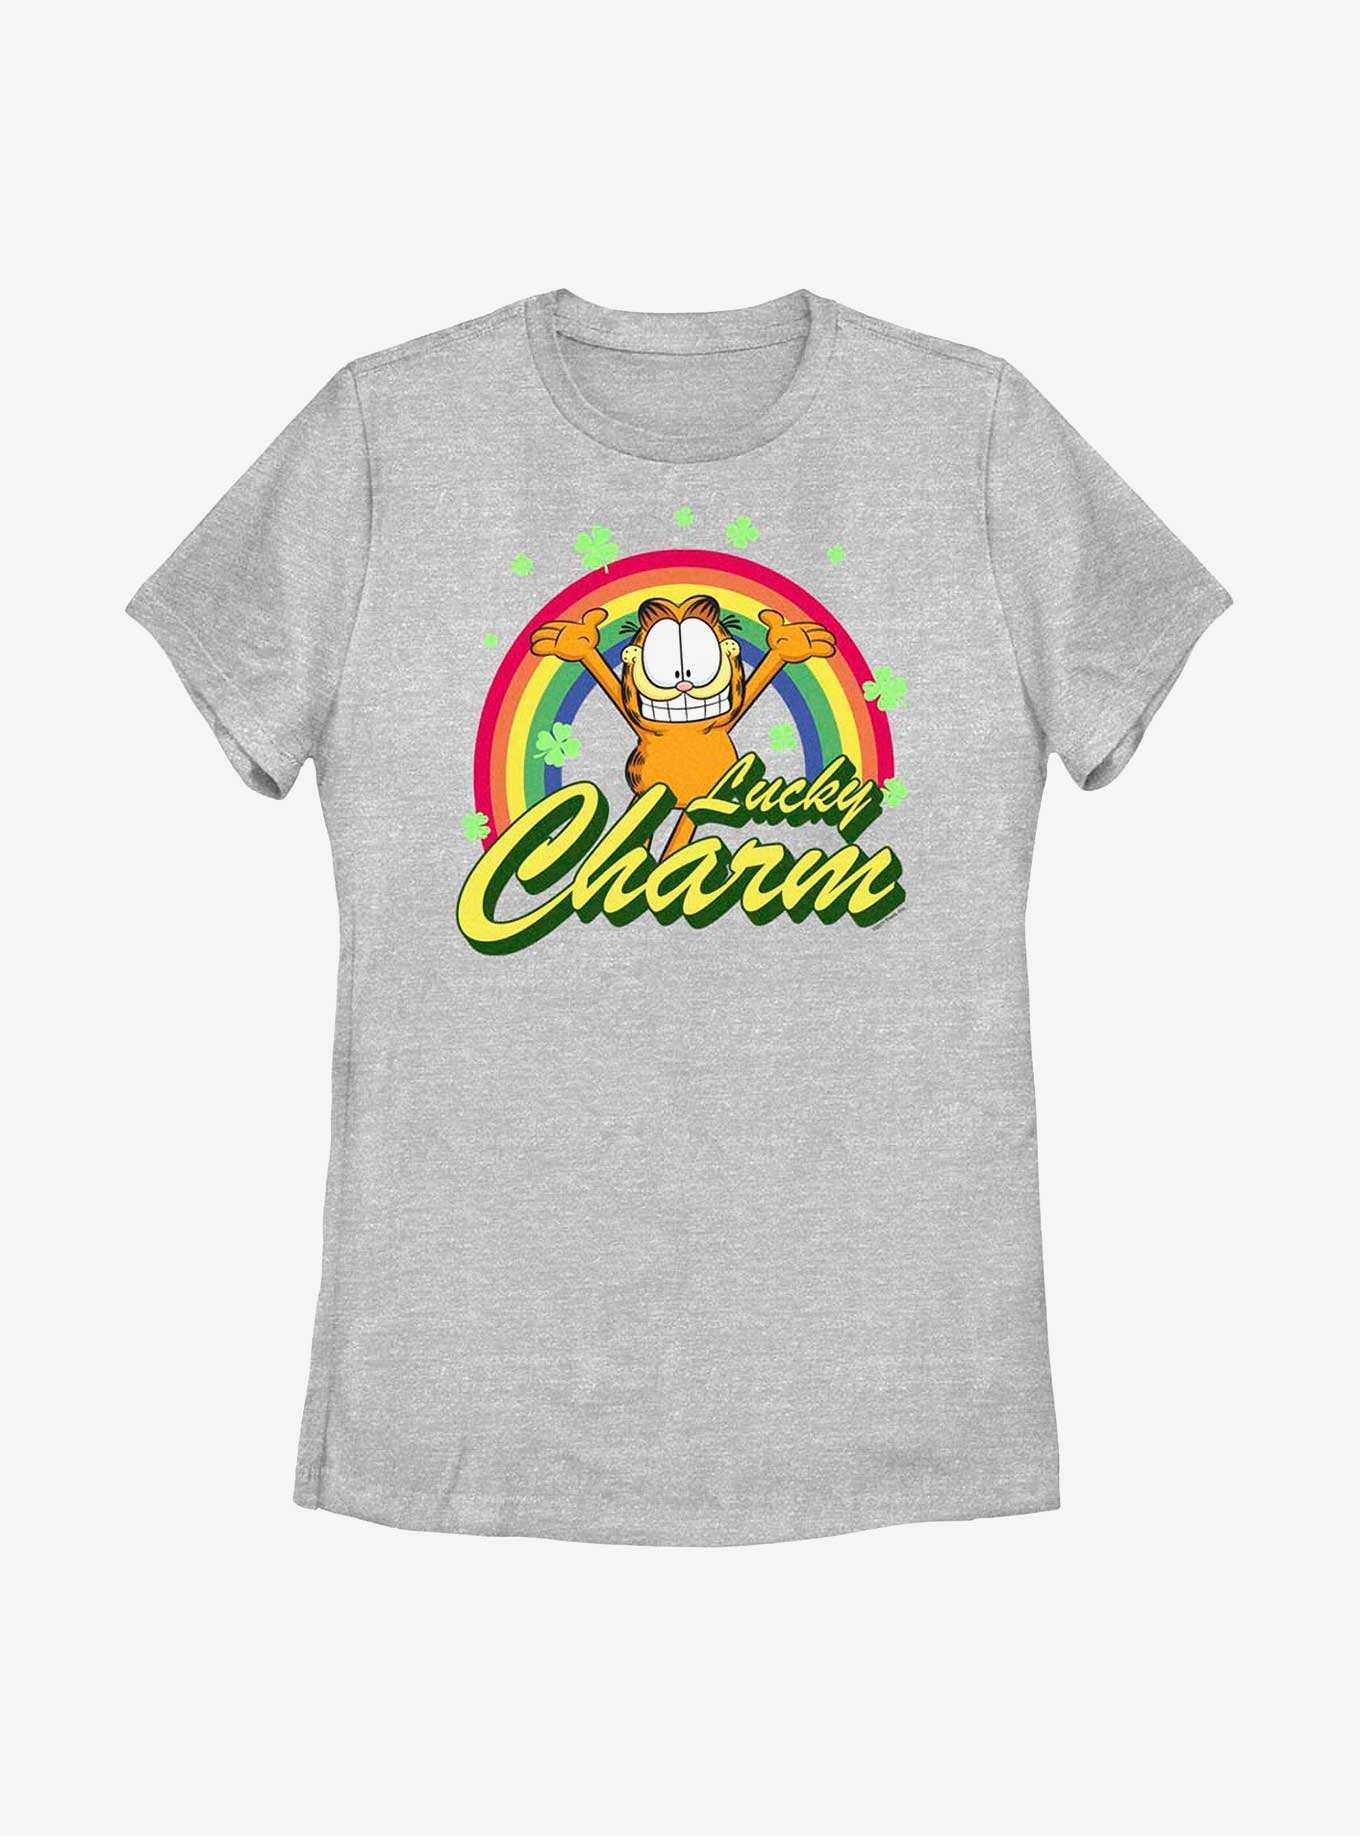 Garfield Lucky Charm Women's T-Shirt, , hi-res